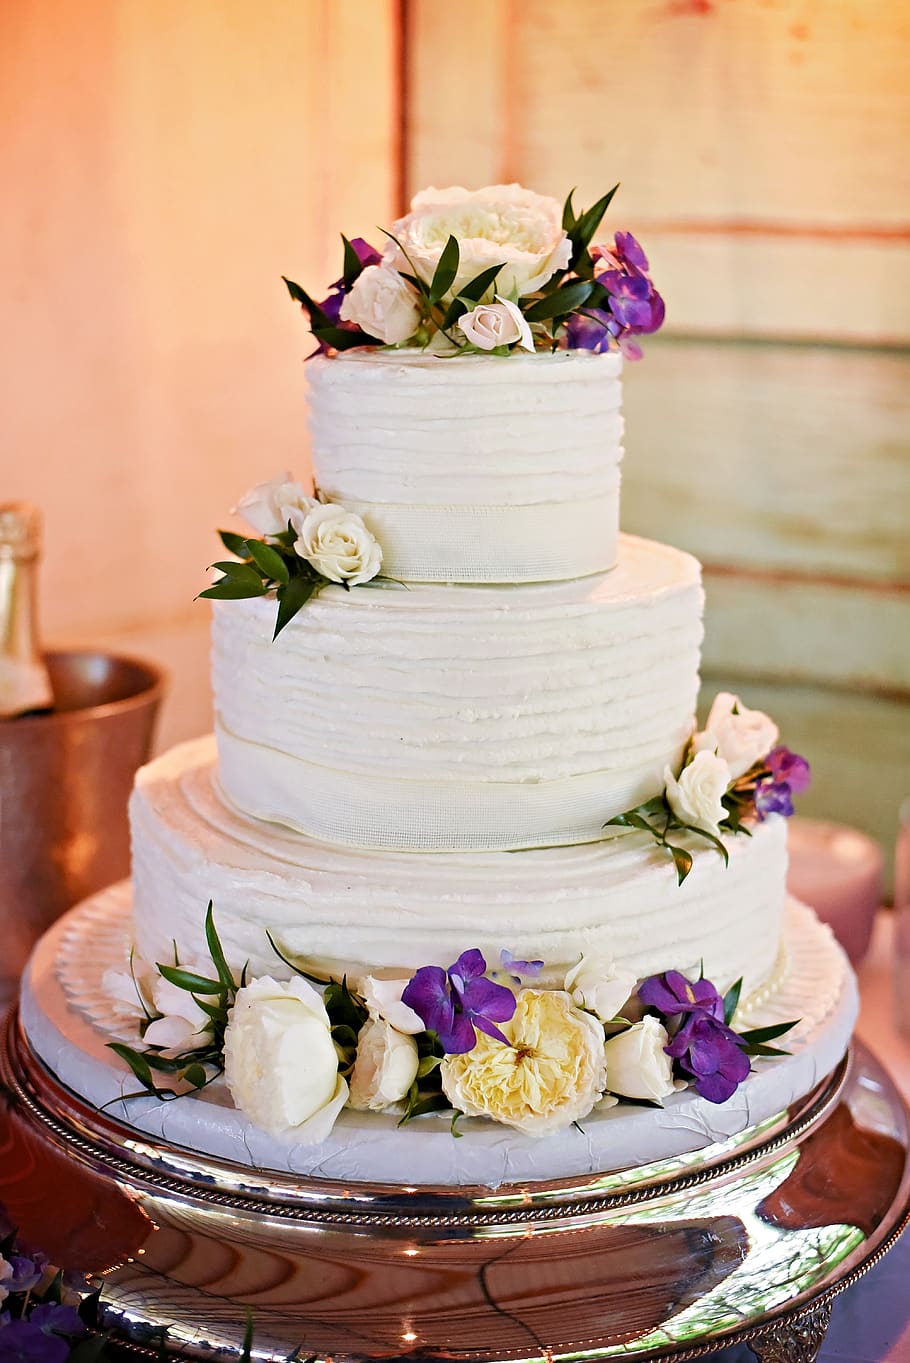 wedding cake, flowers, cake, wedding, celebration, party, food, dessert, marriage, decoration